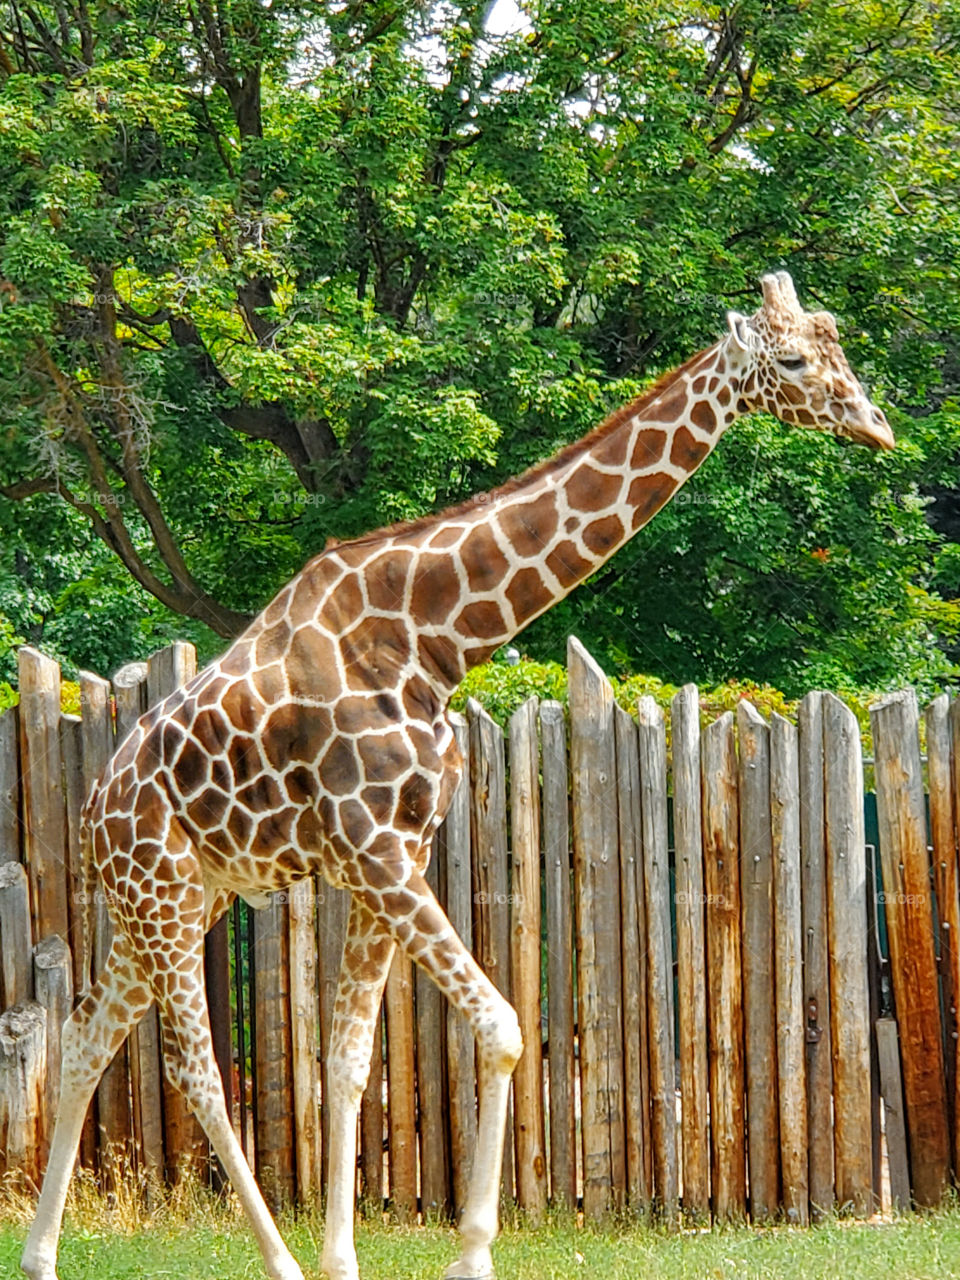 Giraffes are unique